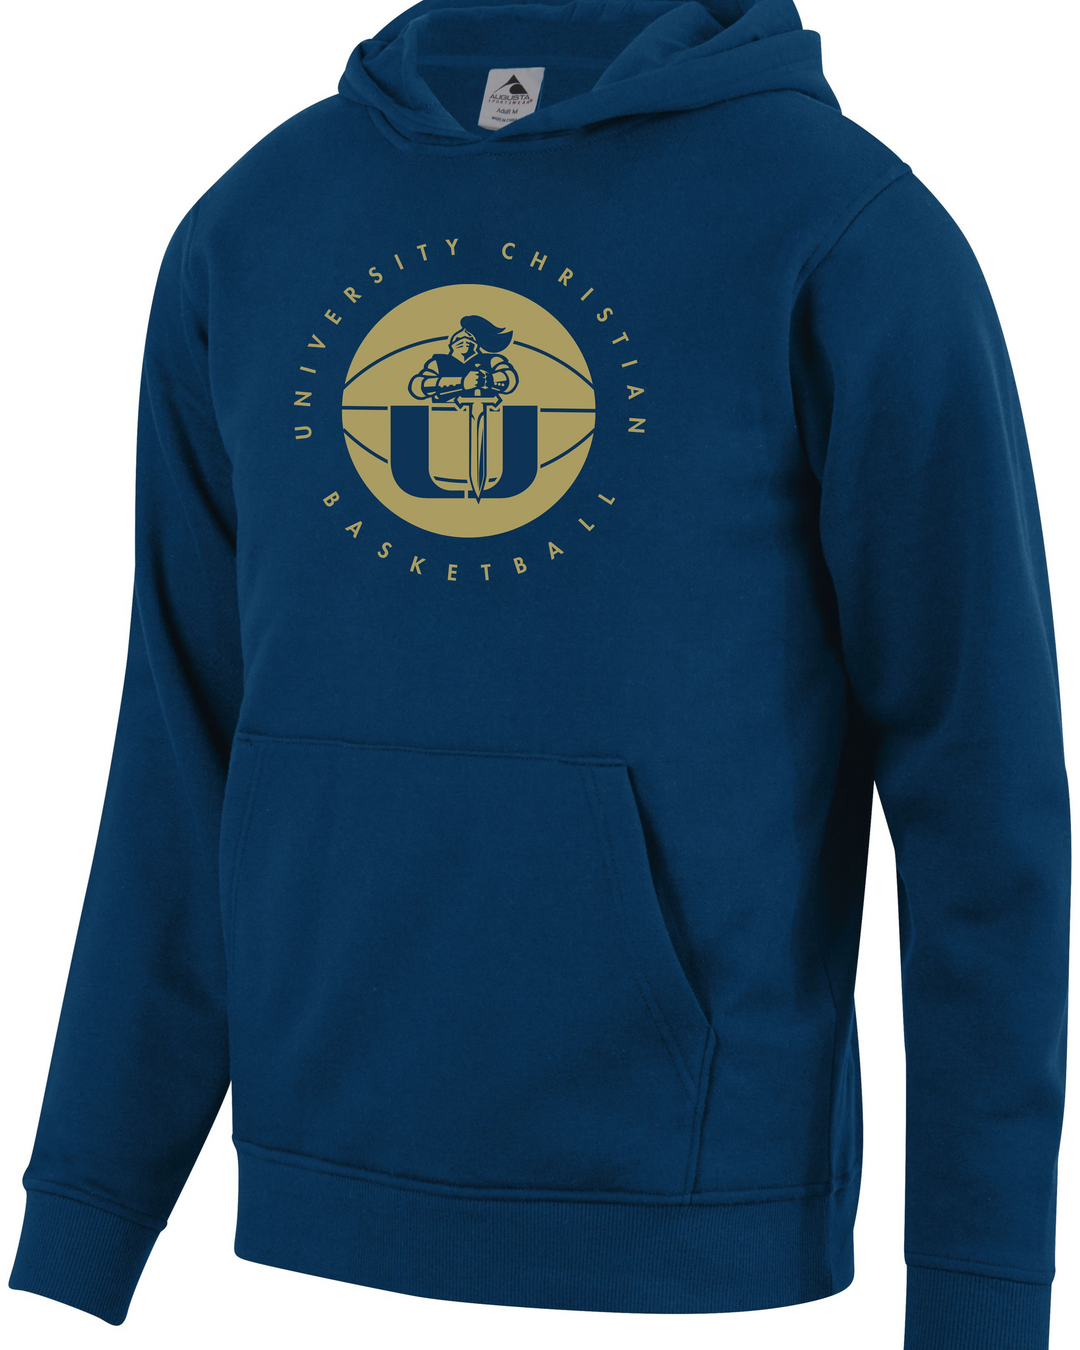 UC Basketball Sweatshirt For Sweatsuit Set